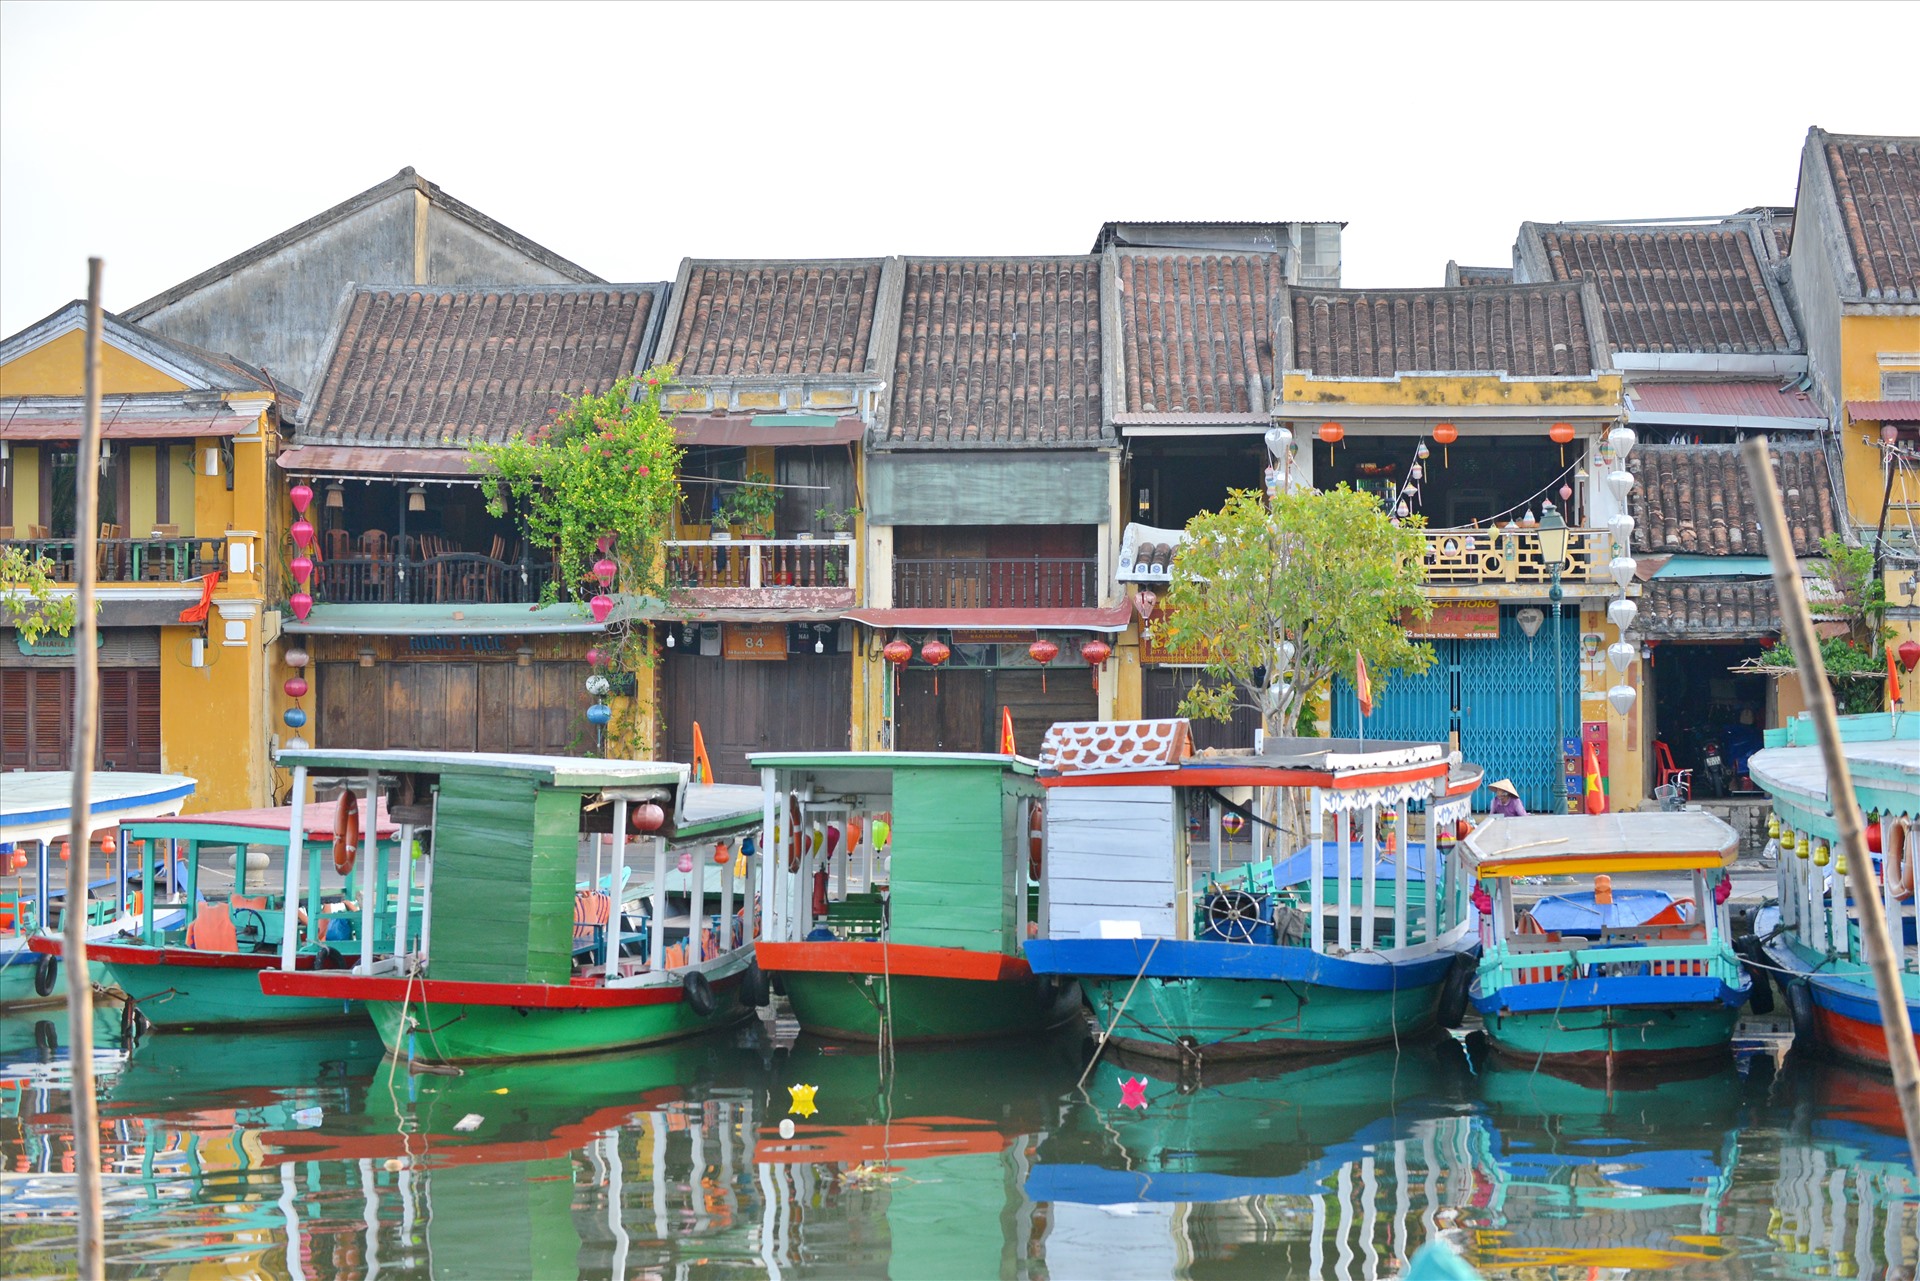 Cảnh trên bến dưới thuyền gợi nhớ hình ảnh một khu cảng thị xưa. Ảnh: Thái Hoàng